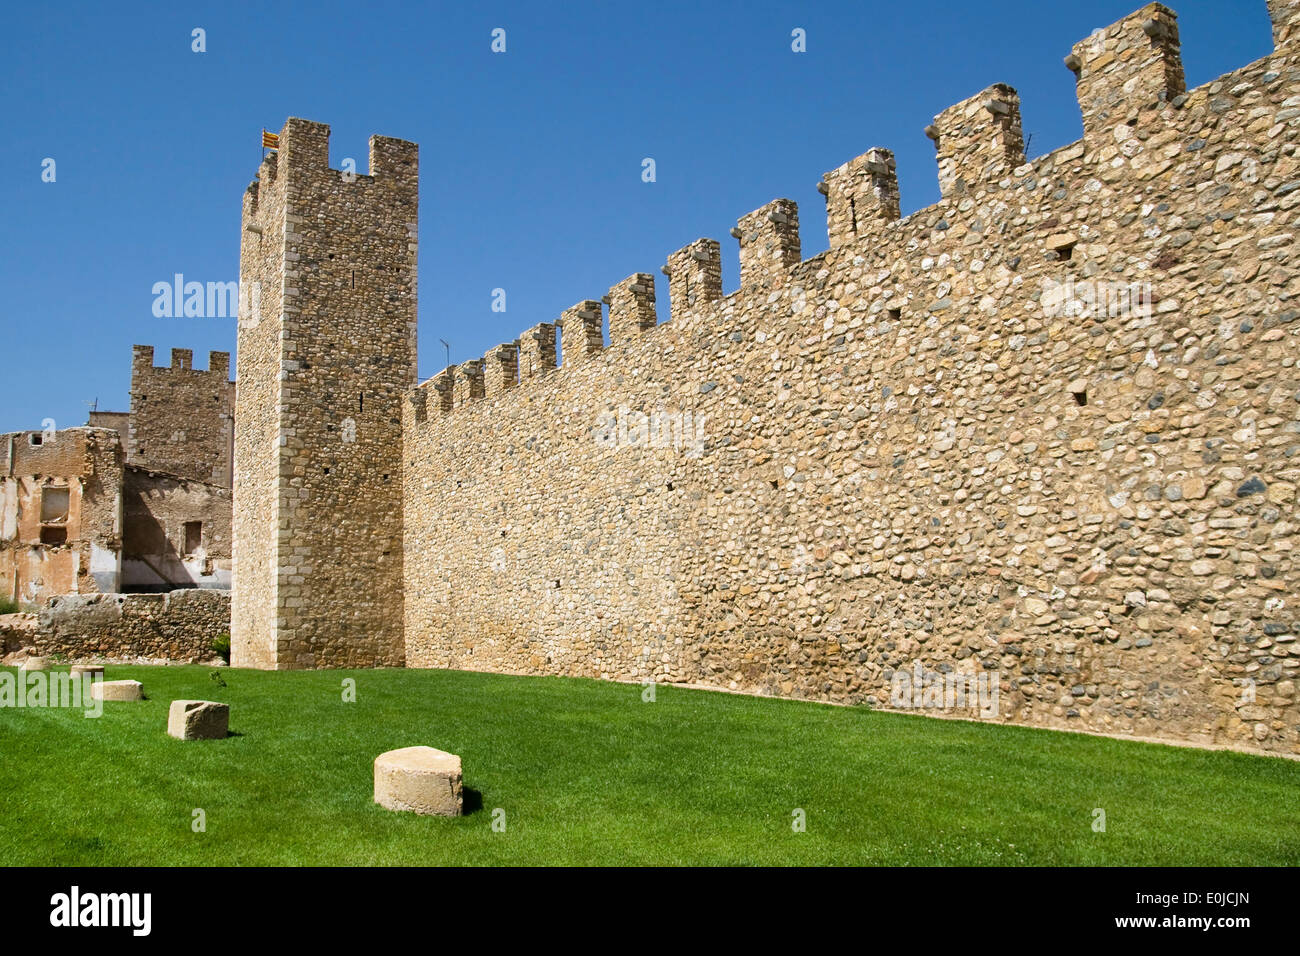 Mauern der befestigten Stadt von Montblanc, Katalonien. Stockfoto